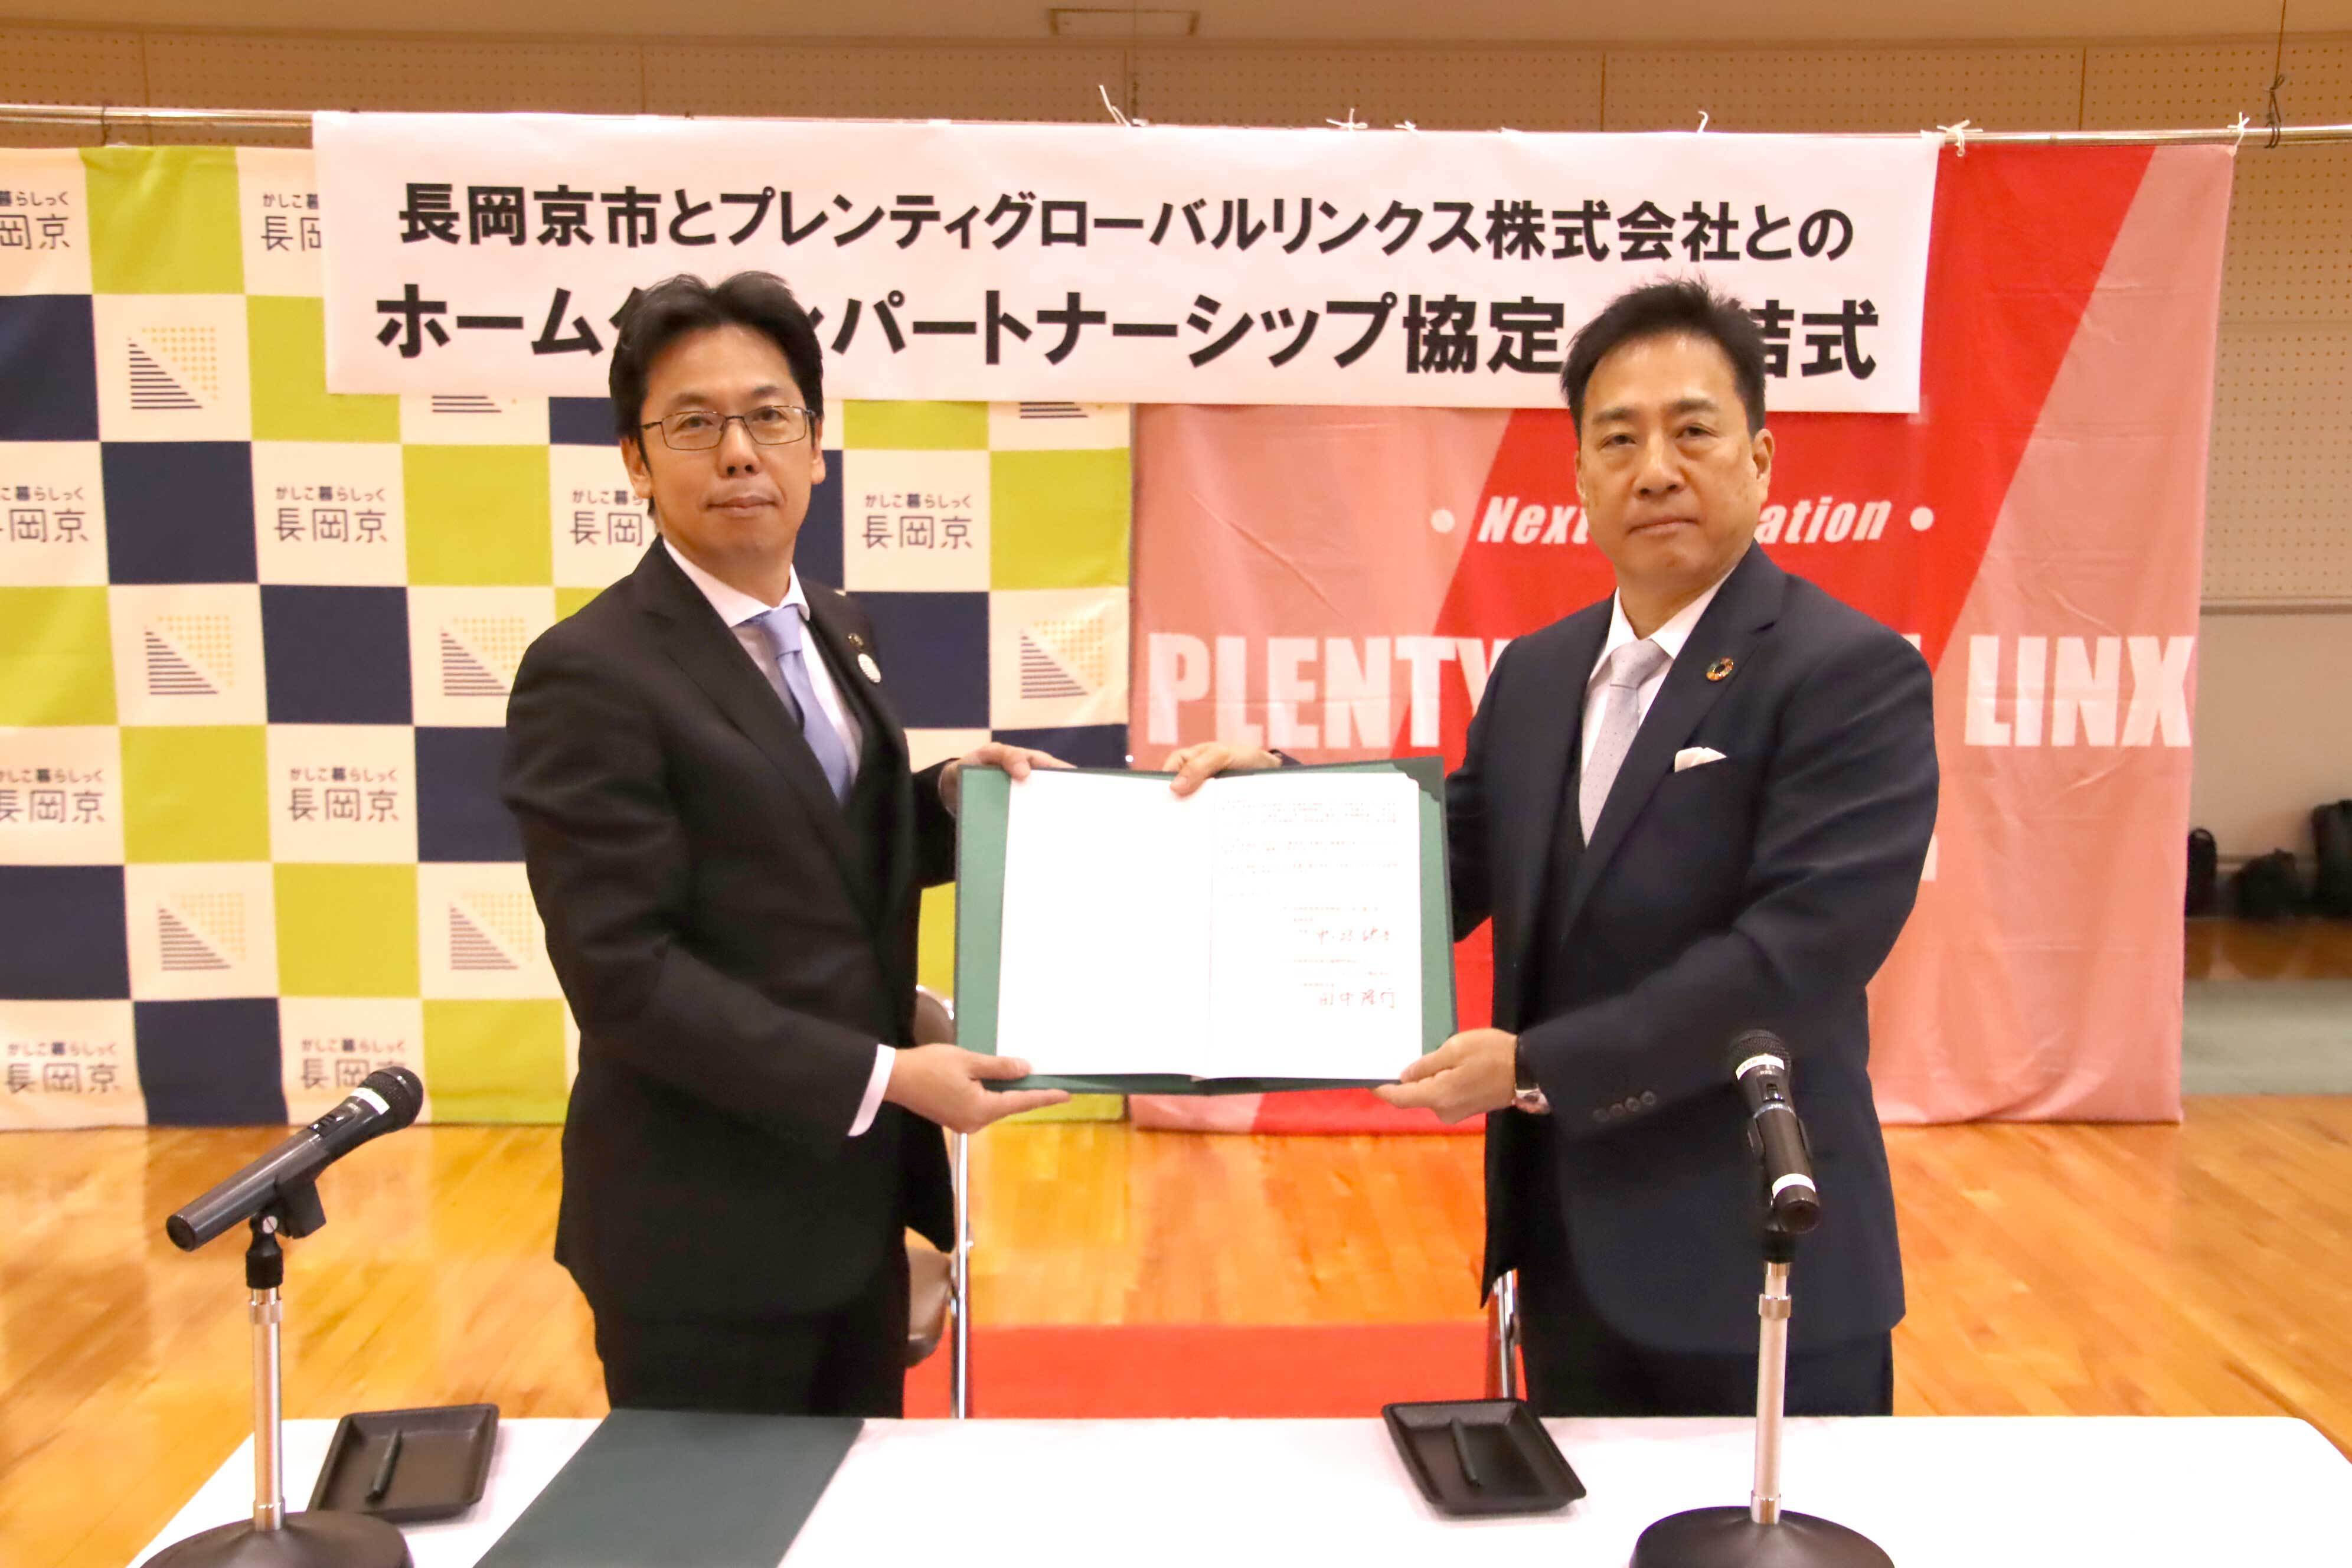 協定締結式での、市長とプレンティグローバルリンクス株式会社田中社長の写真